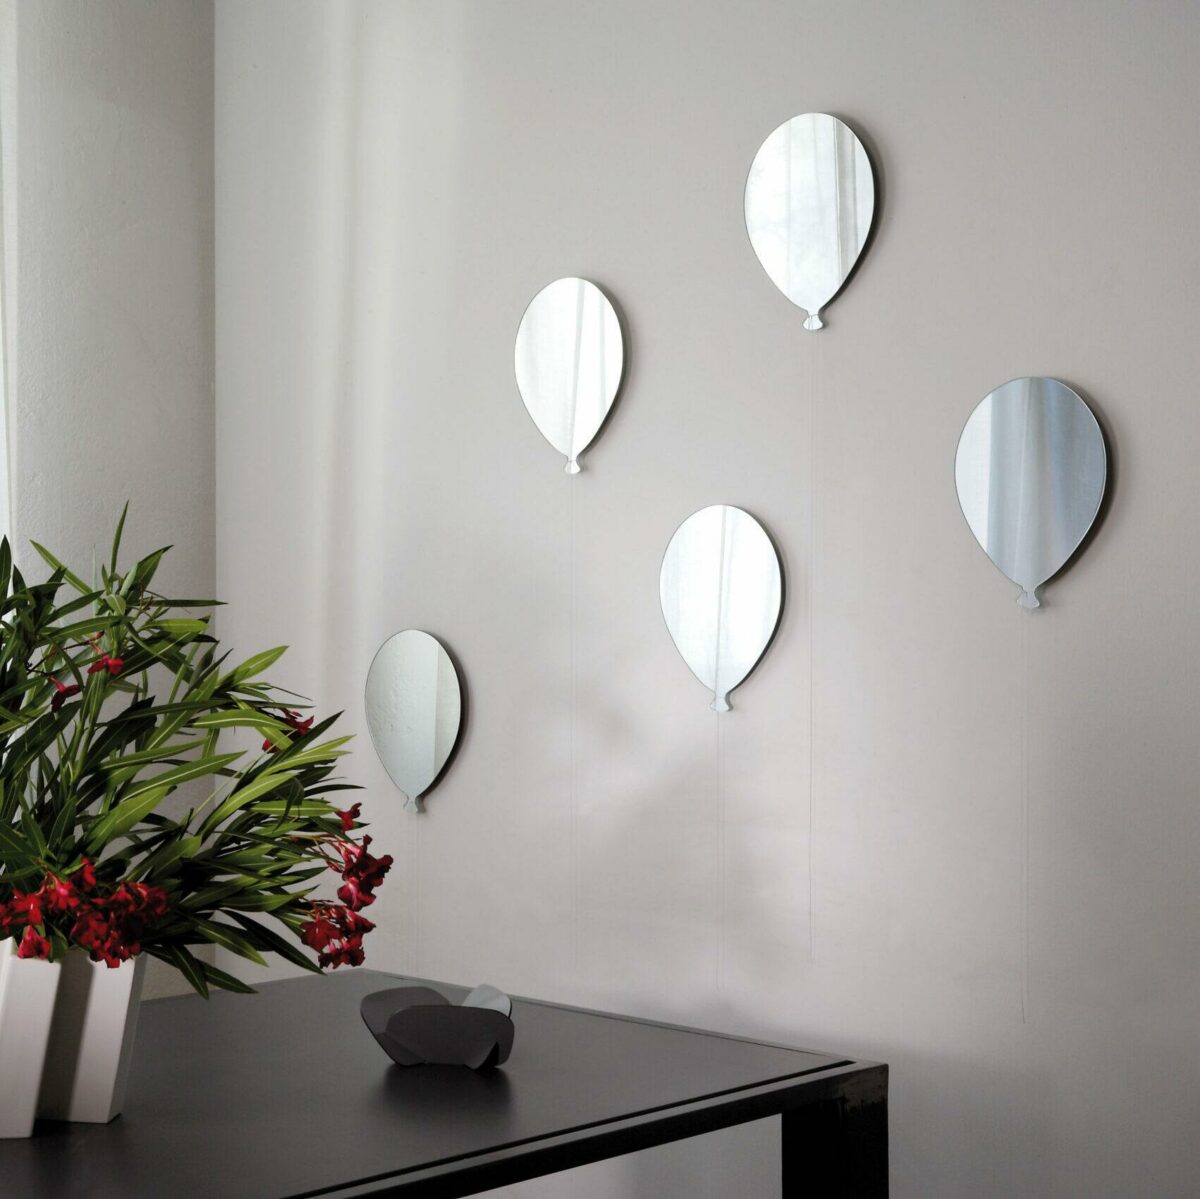 un bouquet di 5 palloncini in vetro formano una composizione di specchi su una parete bianca. I palloncini sono rifiniti anche con un filo bianco